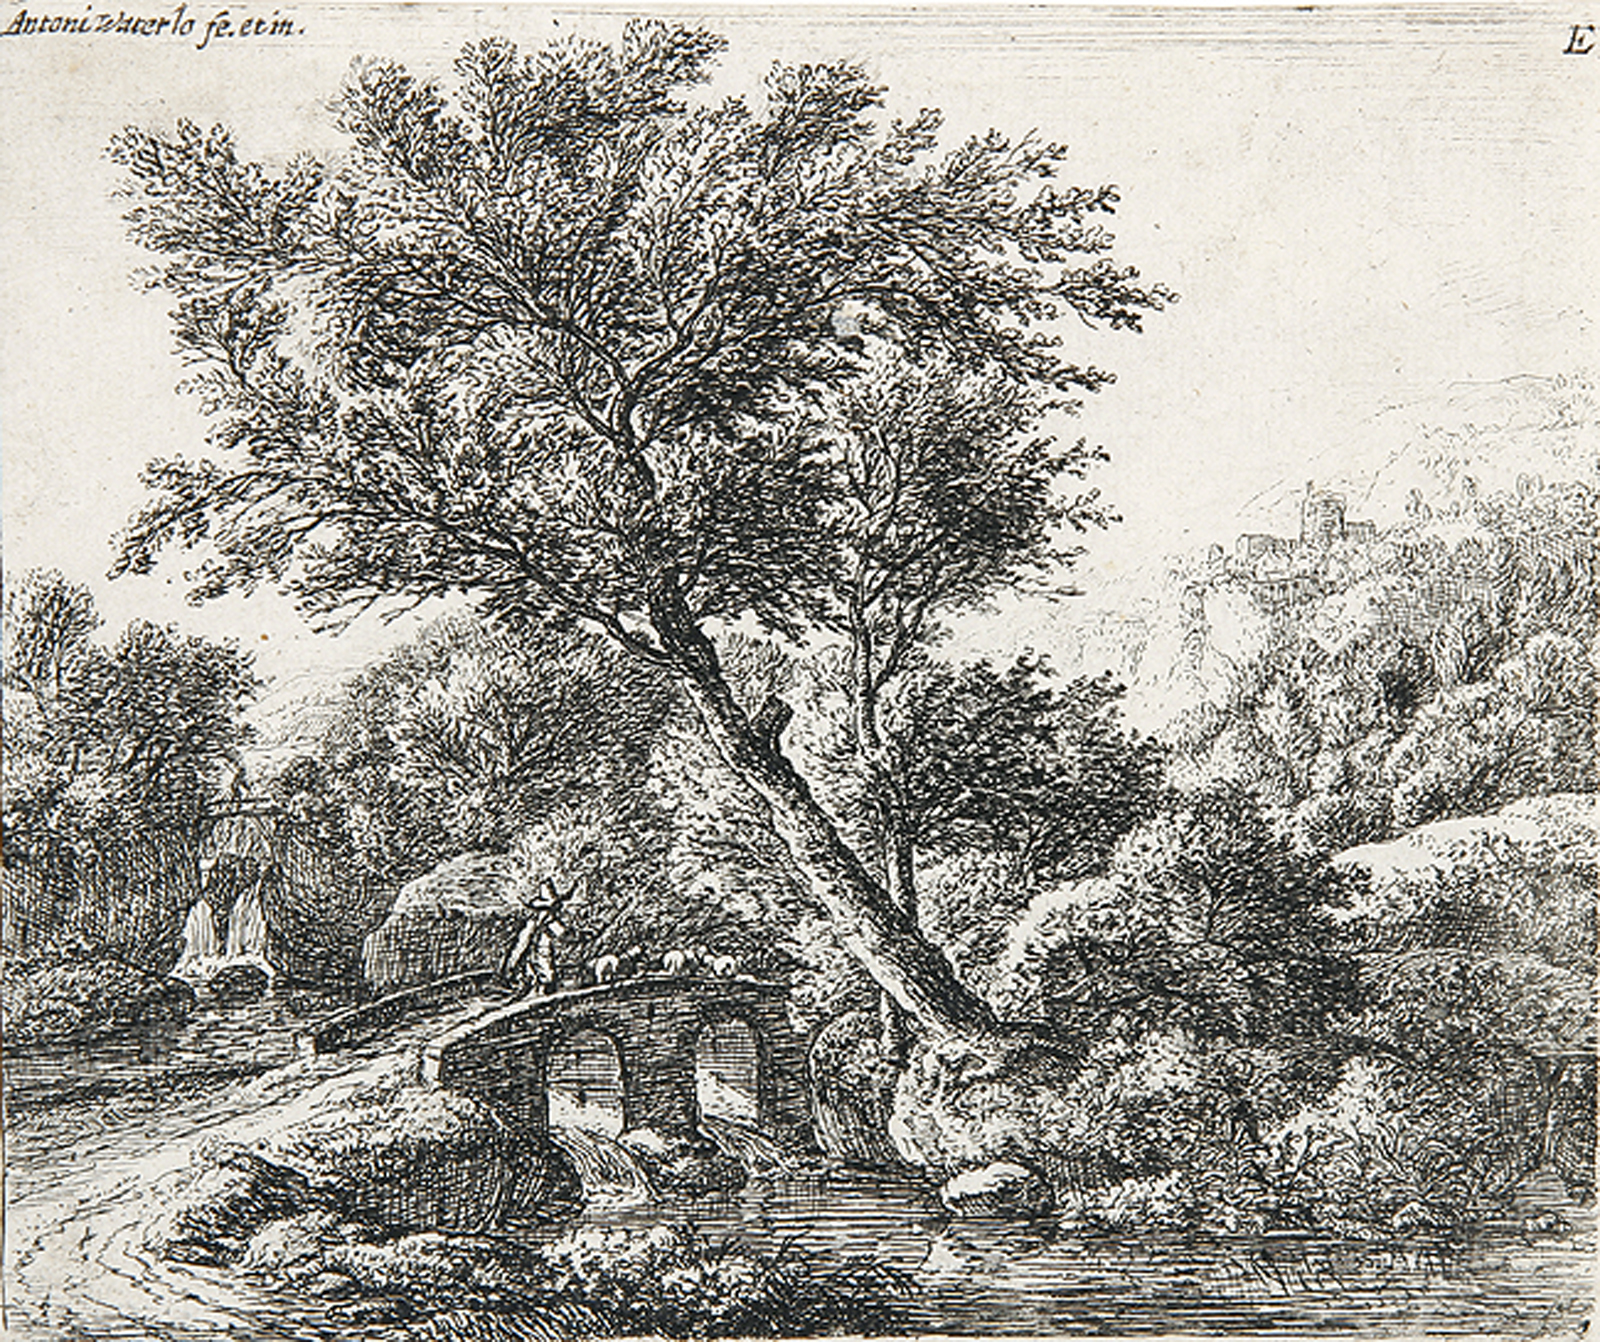 Die steinerne Brücke mit dem Hirten - Der Kuhhirte in einer Landschaft mit der Mühle.